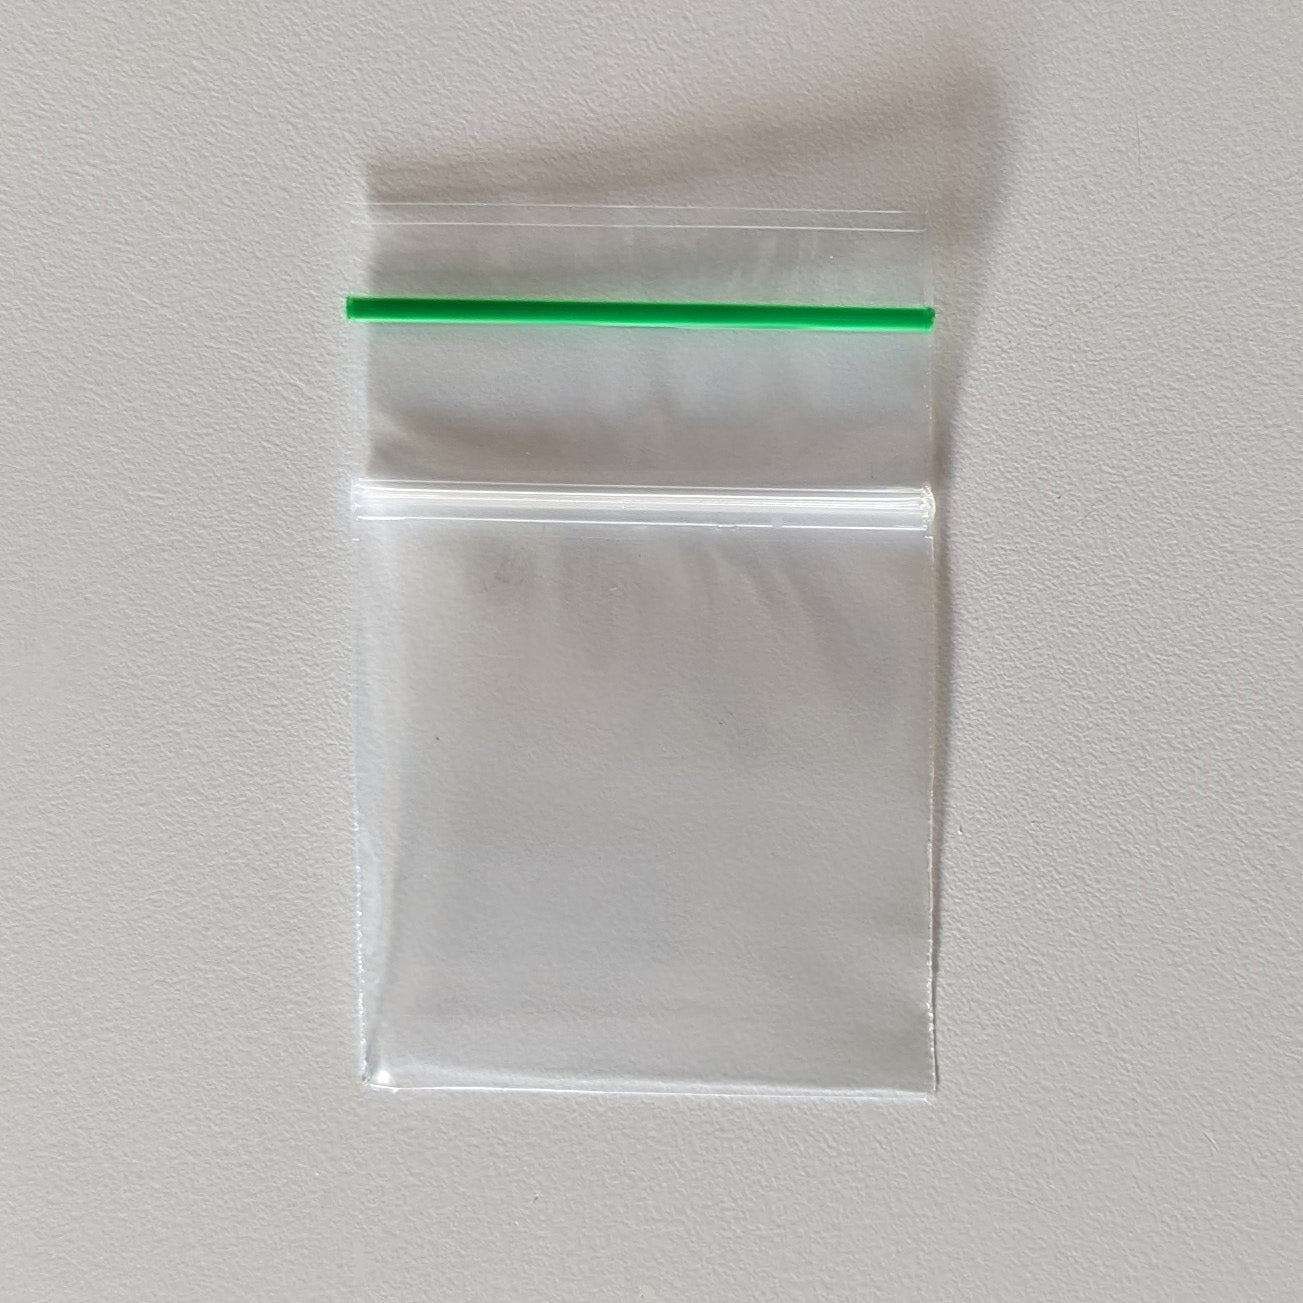 6 x 8 Zip Lock Freezer Bags 4 Mil ClearZip - 1000 Case